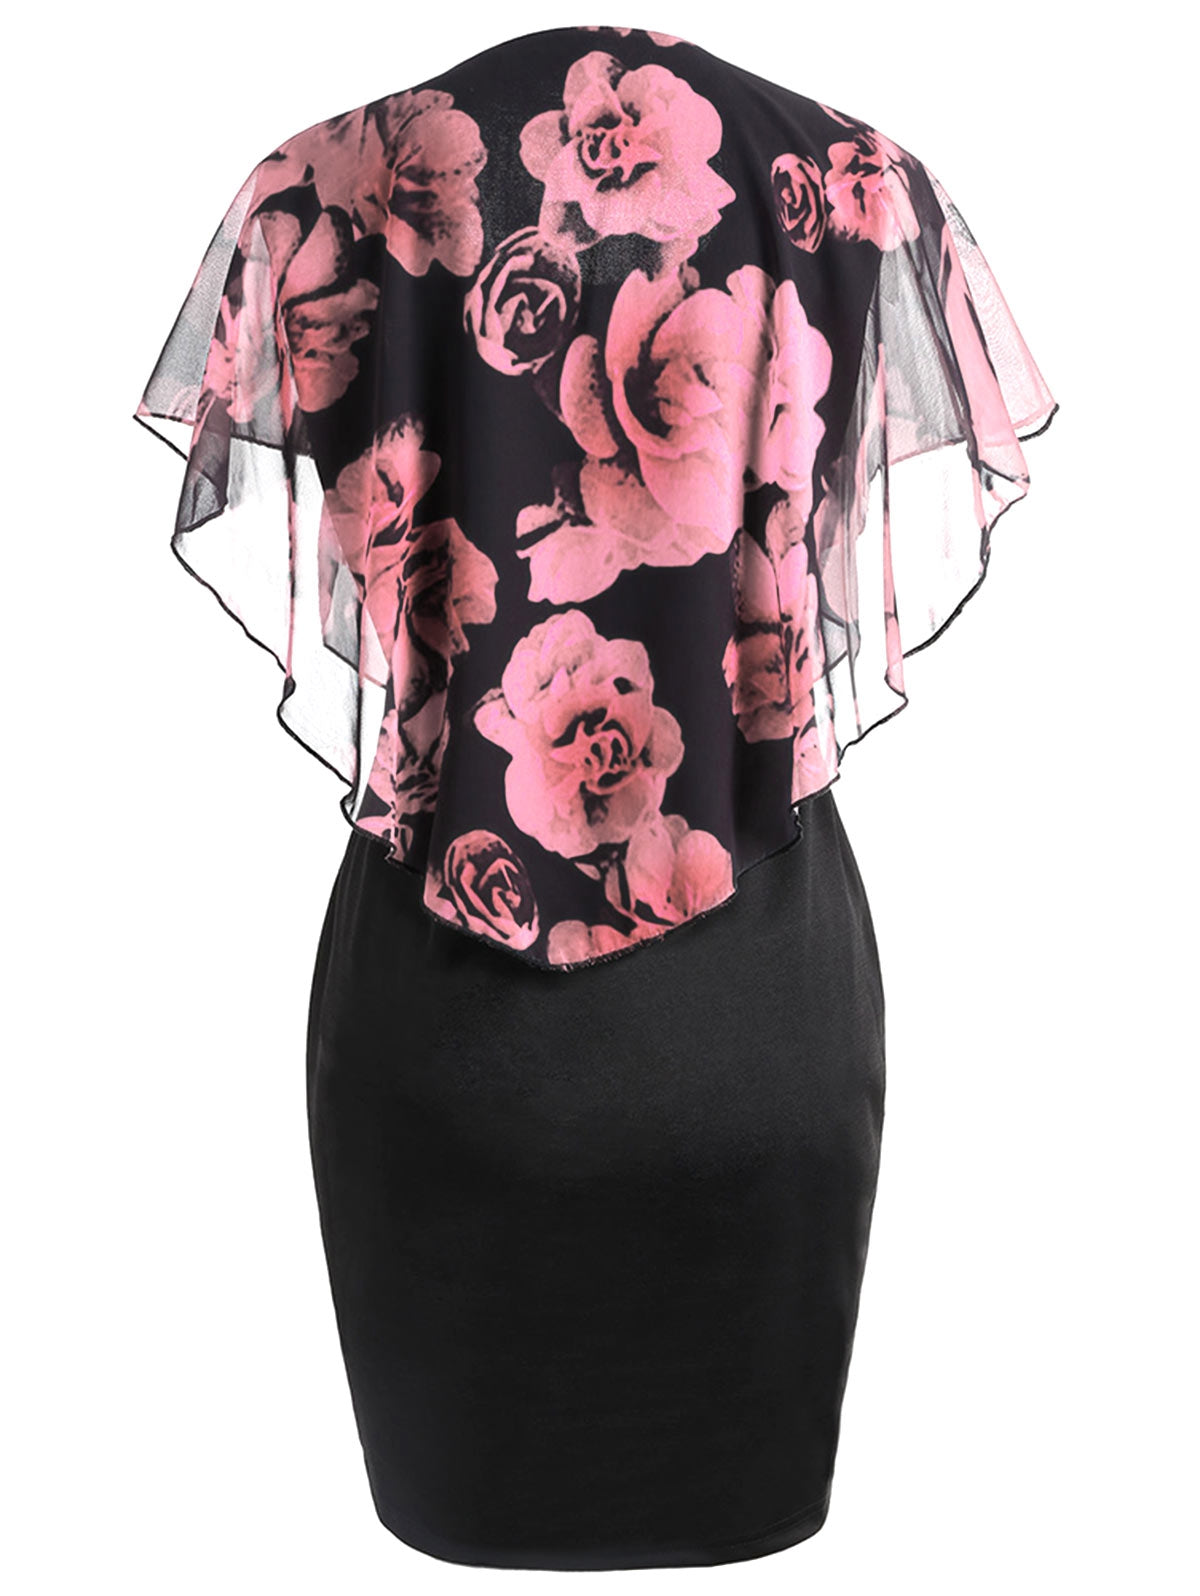 Plus Size Rose Overlay Capelet Dress DromedarShop.com Online Boutique